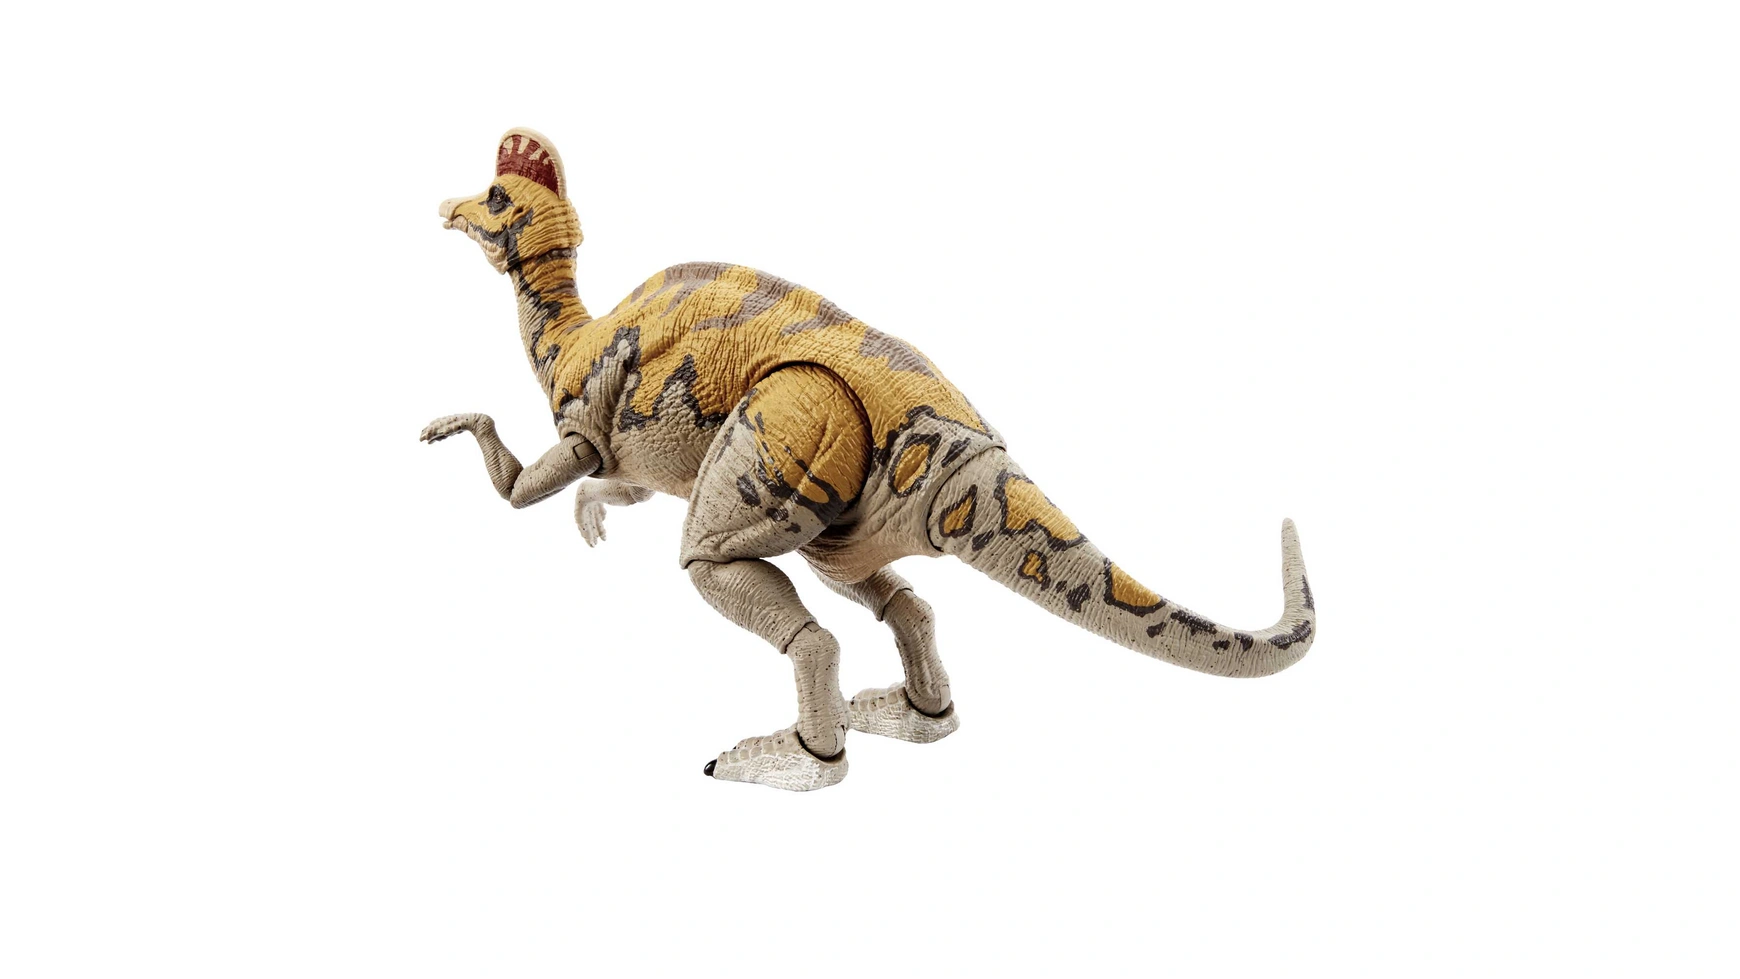 опыты занимательная биология питомец из юрского периода Мир юрского периода коллекция хаммонда коритозавр среднего размера Mattel